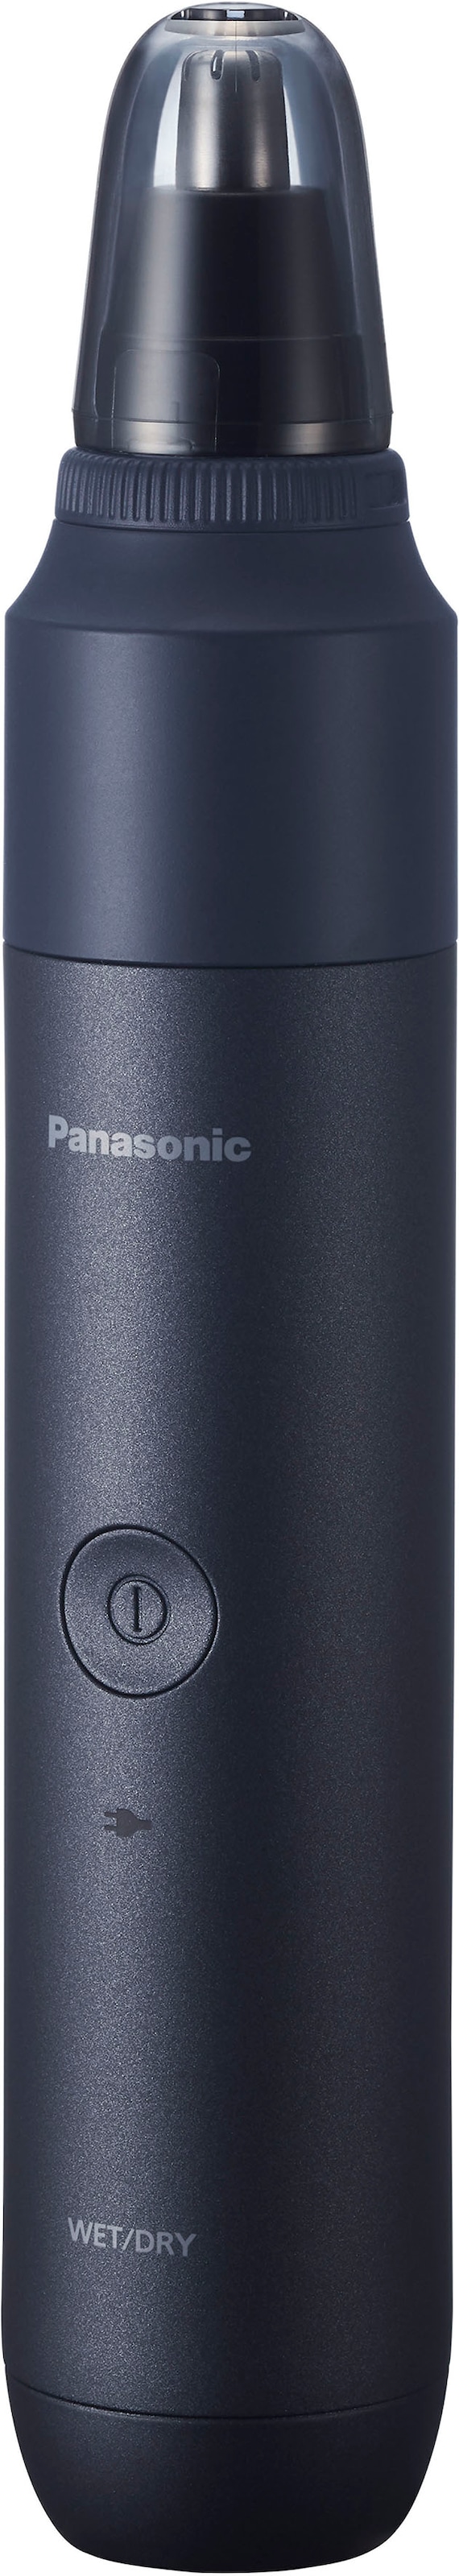 Panasonic Nasen- und Ohrhaartrimmeraufsatz »Multishape Aufsatz Nasenhaarschneider«